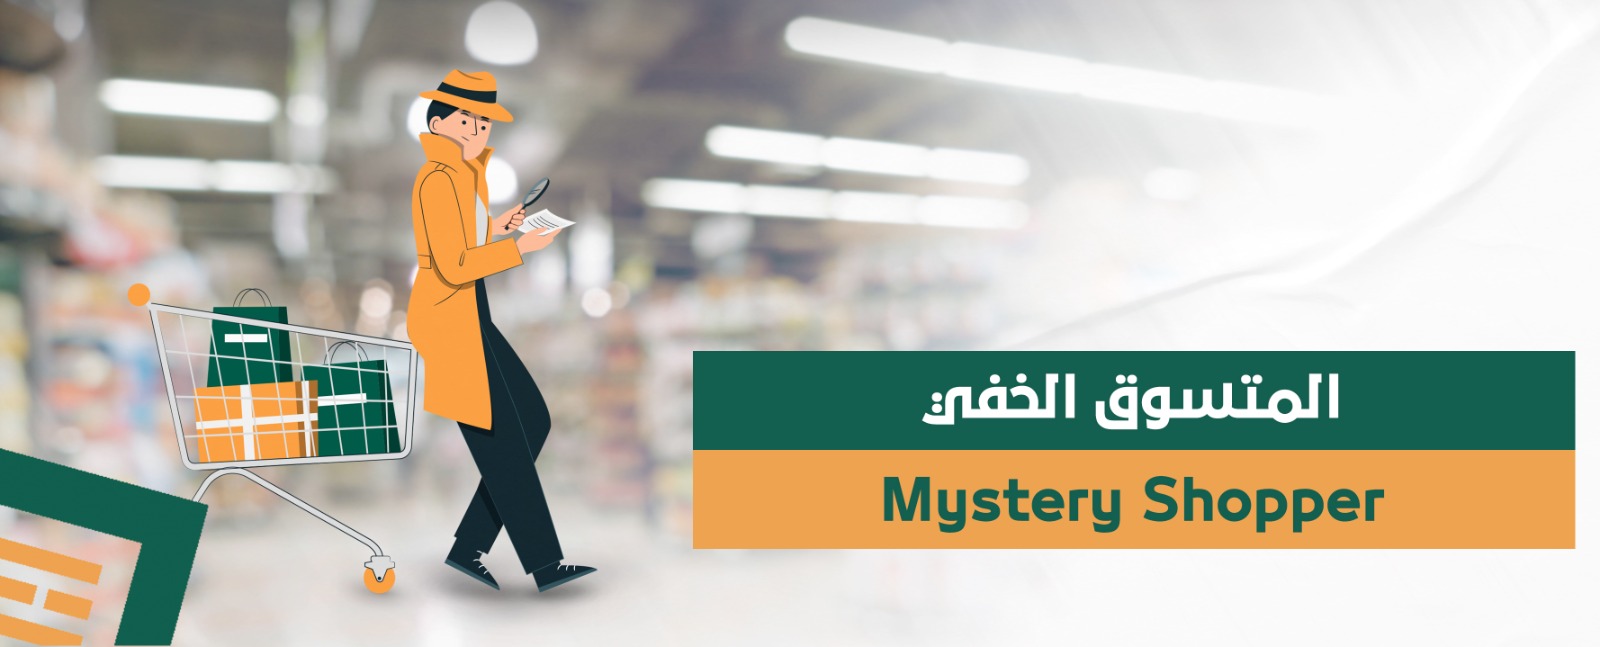 المتسوق الخفي Mystery Shopper